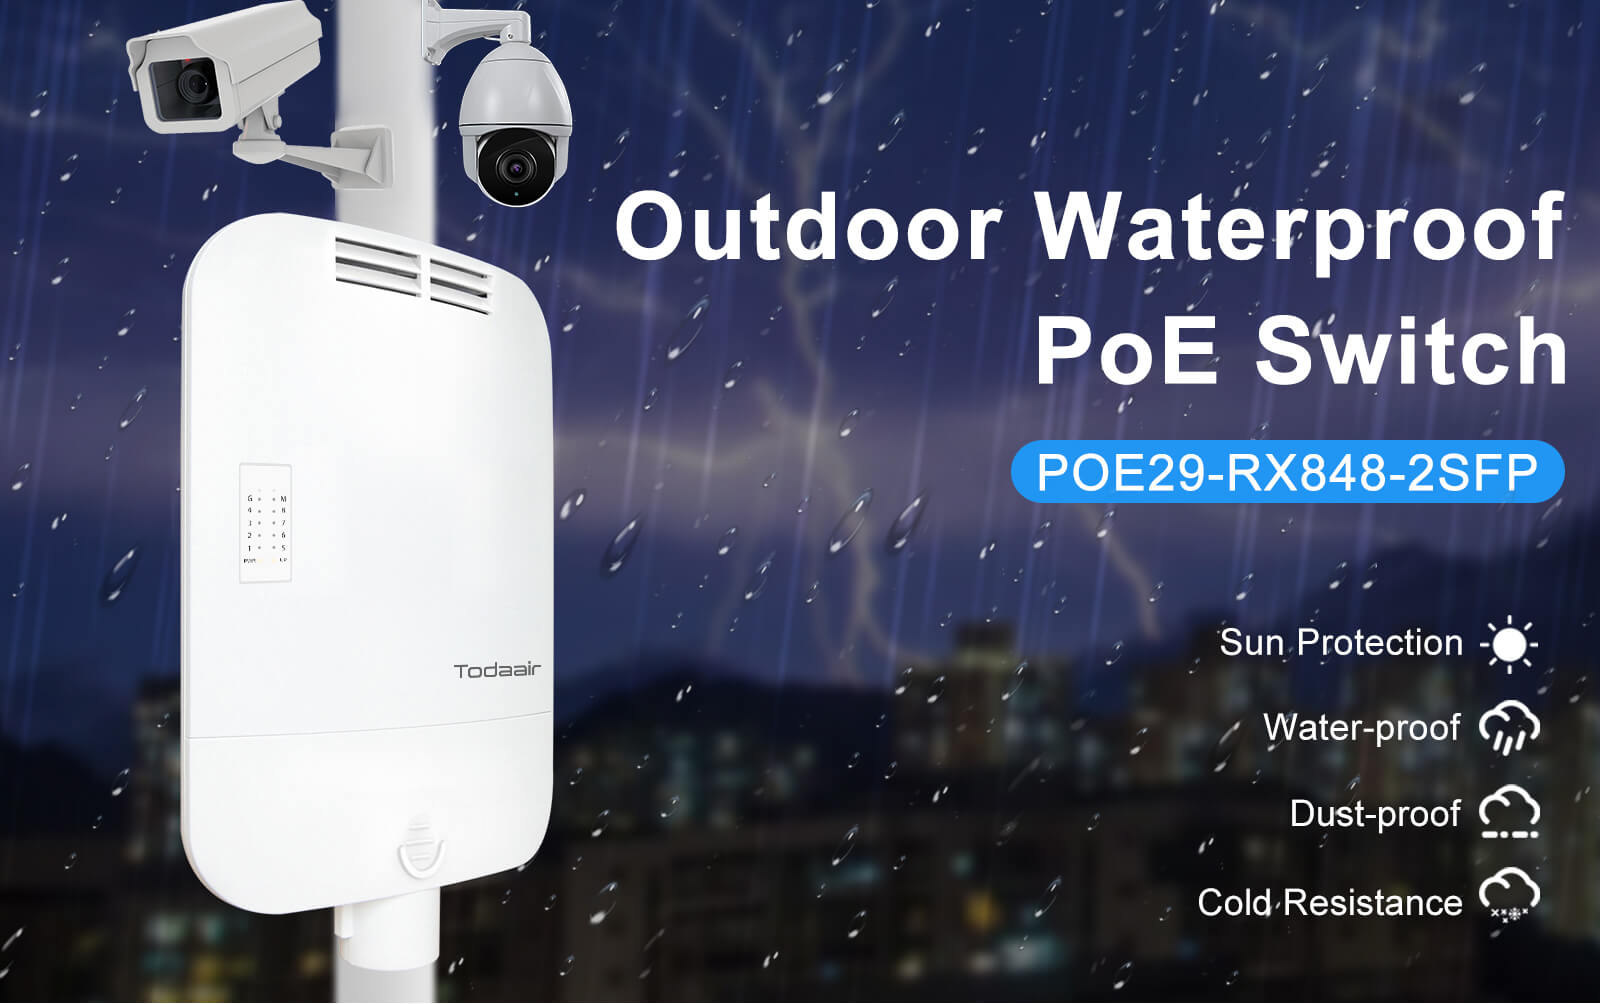 Todaair outdoor waterproof POE switch